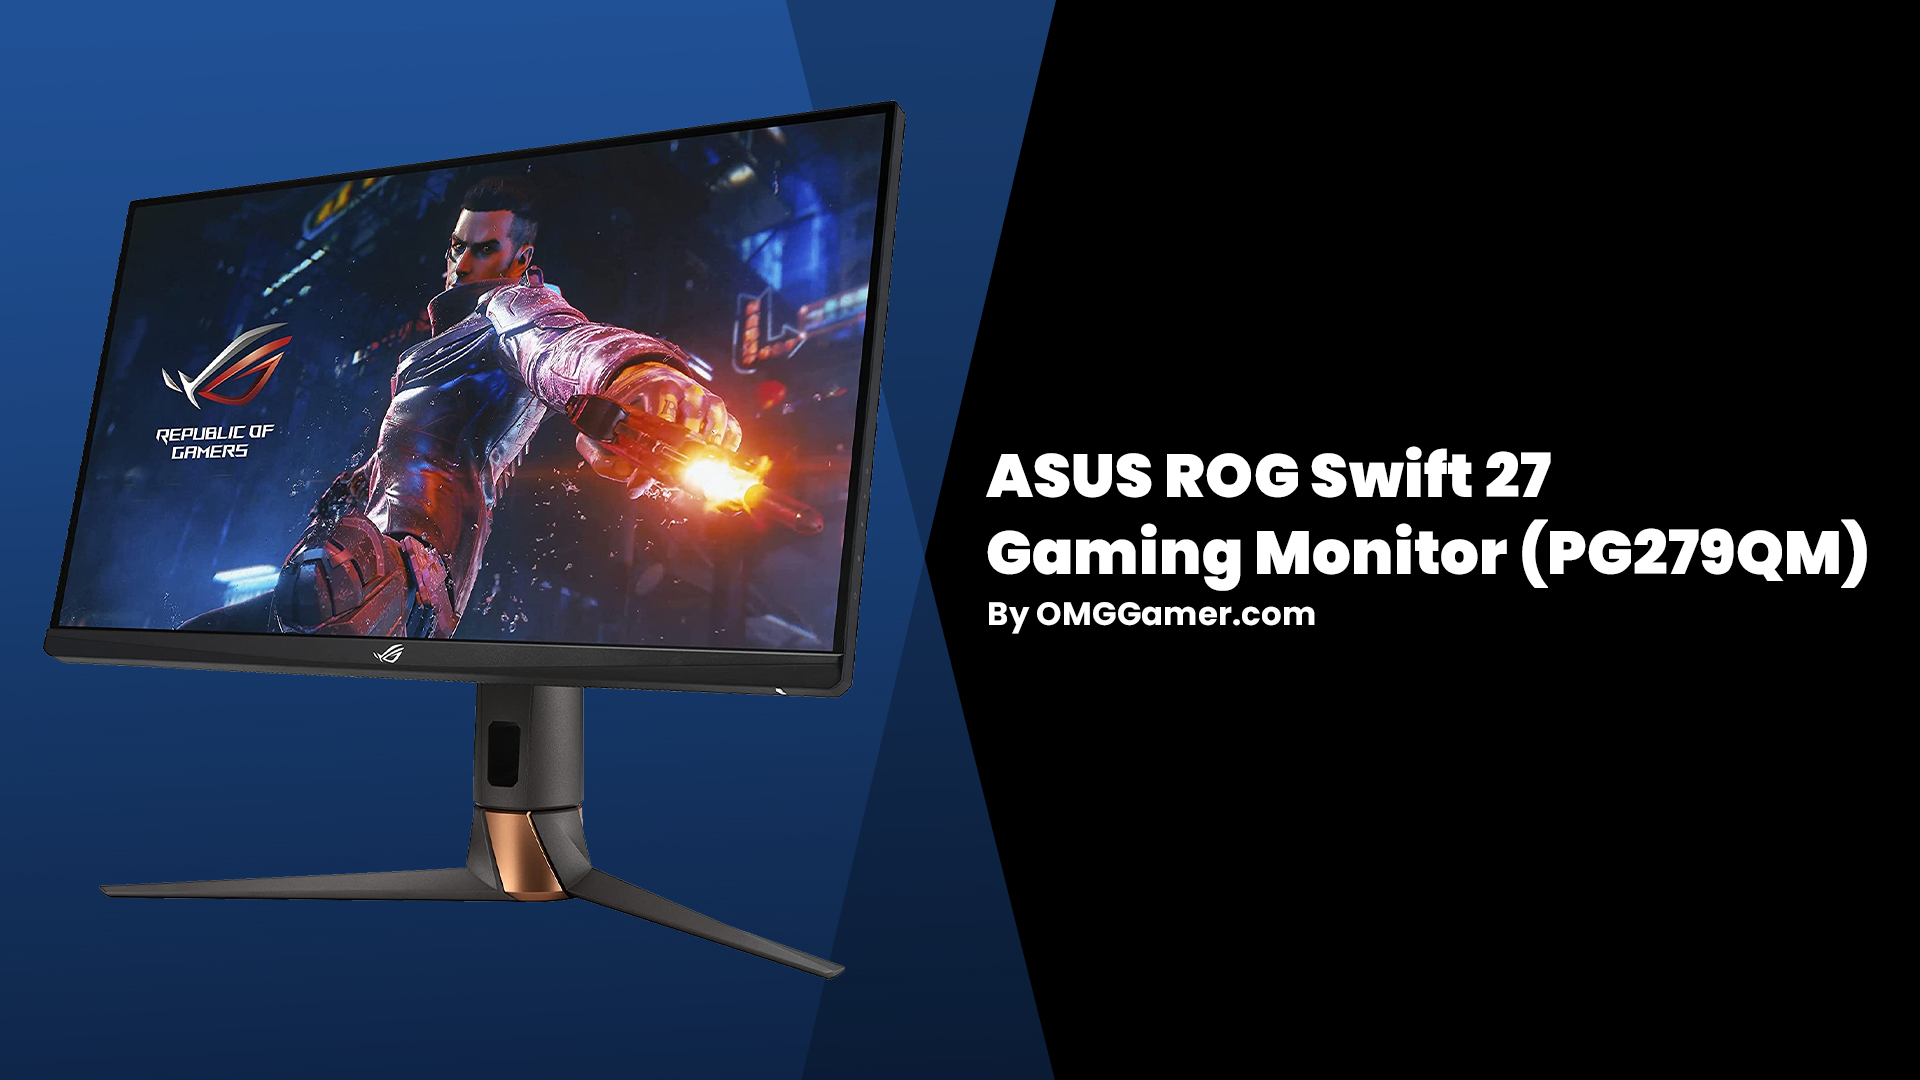 ASUS ROG Swift 27 Gaming Monitor (PG279QM)